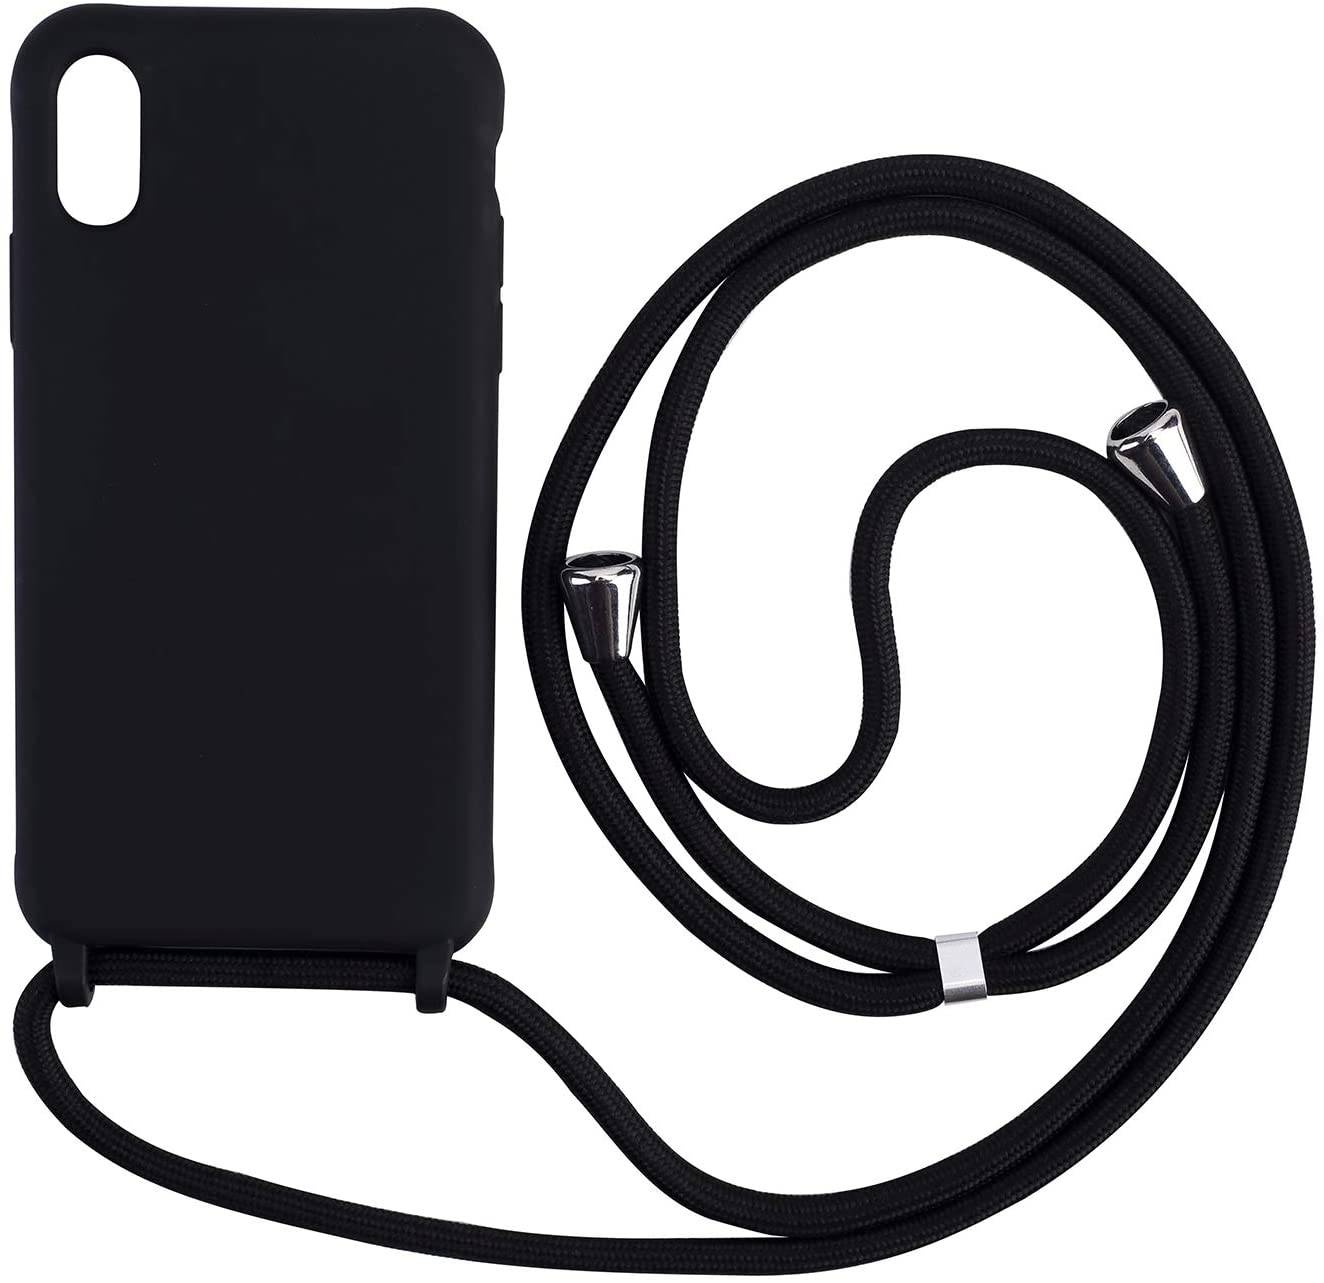 Coque avec cordon pour iPhone X/XS - Protection en Silicone Case - Coque tour de cou, bandoulière iPhone - Coques&Co